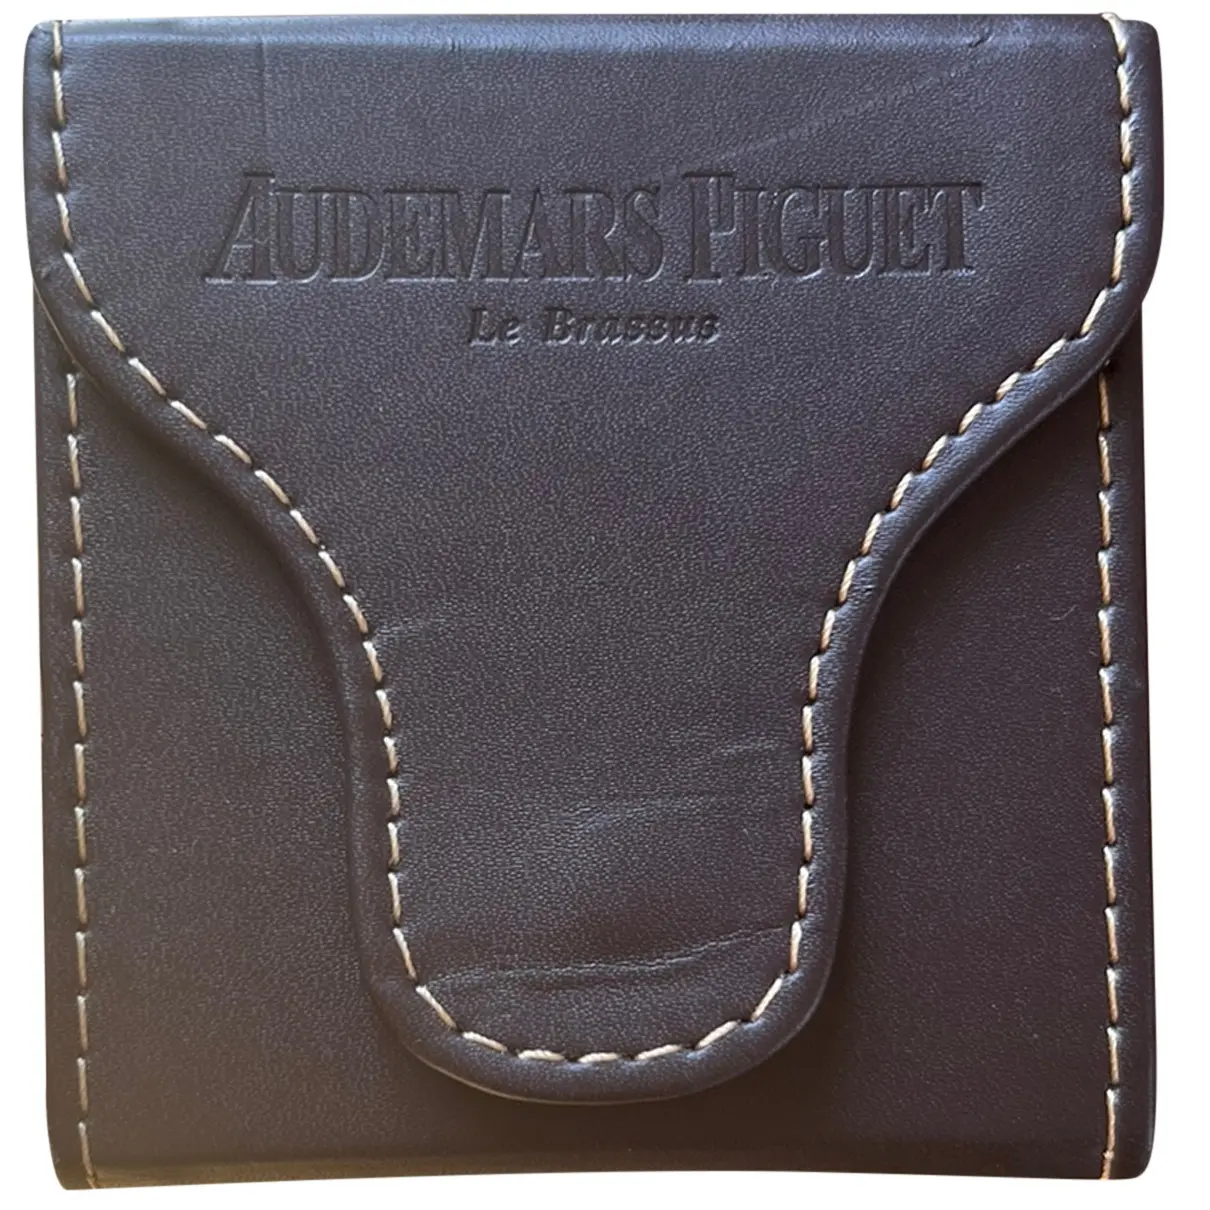 Leather purse Audemars Piguet